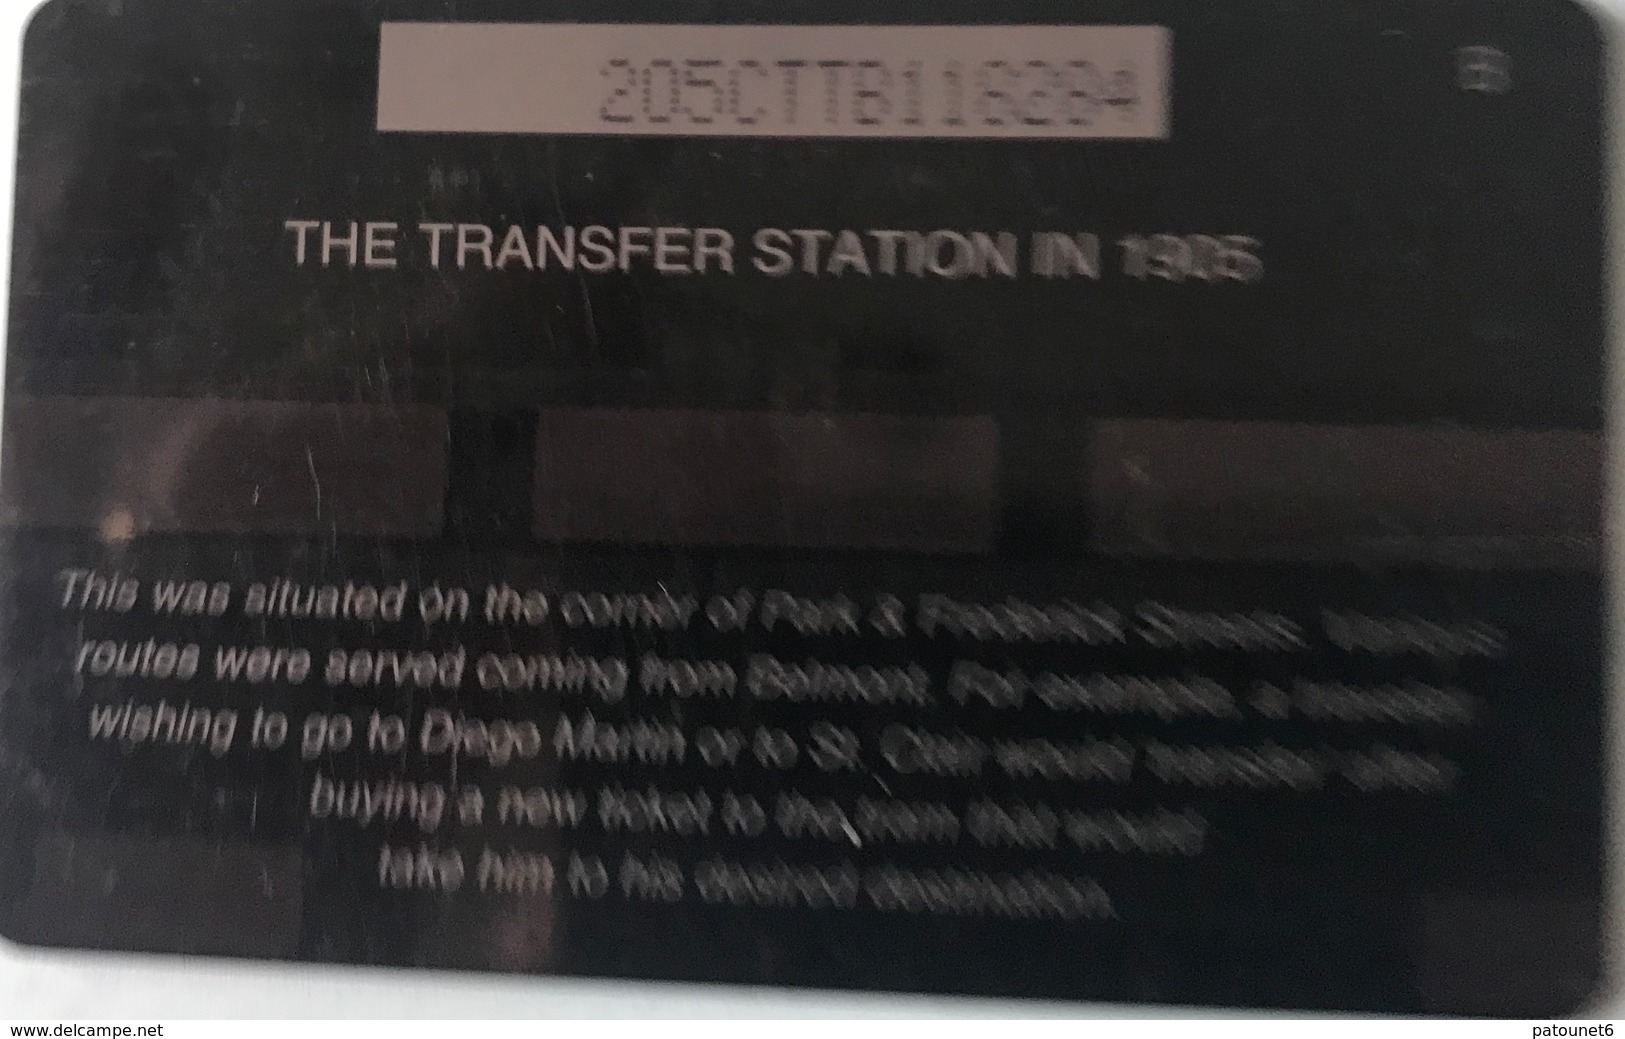 TRINITE & TOBAGO  -  Phonecard  - TSTT  -  The Transfer Station In 1905  -  TT $ 20 - Trinidad & Tobago